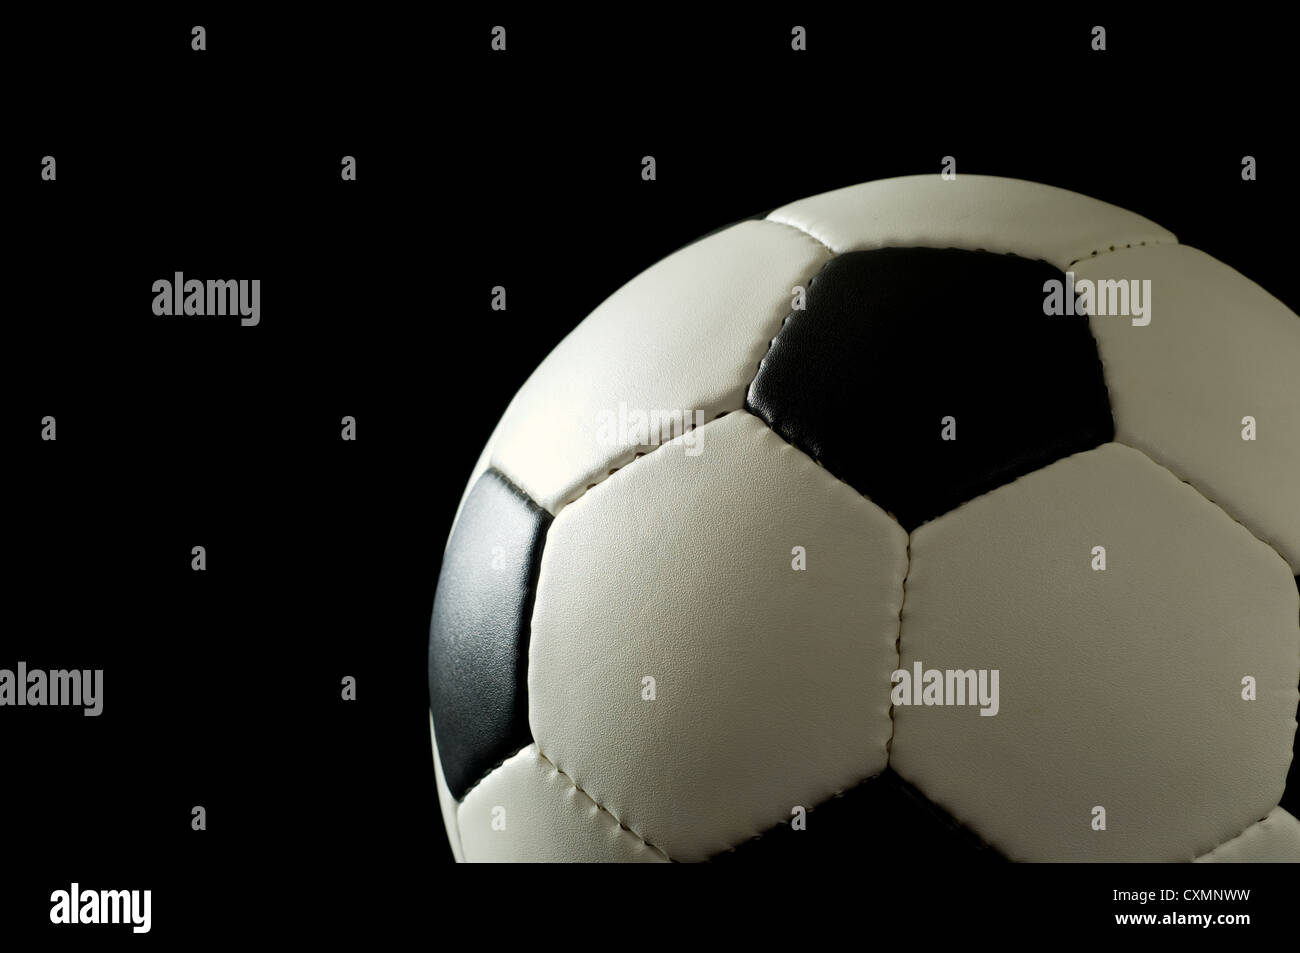 Fußball oder Fußball auf schwarzem Hintergrund beleuchtet, von der Seite - Raum auf der linken Seite für Kopie Stockfoto